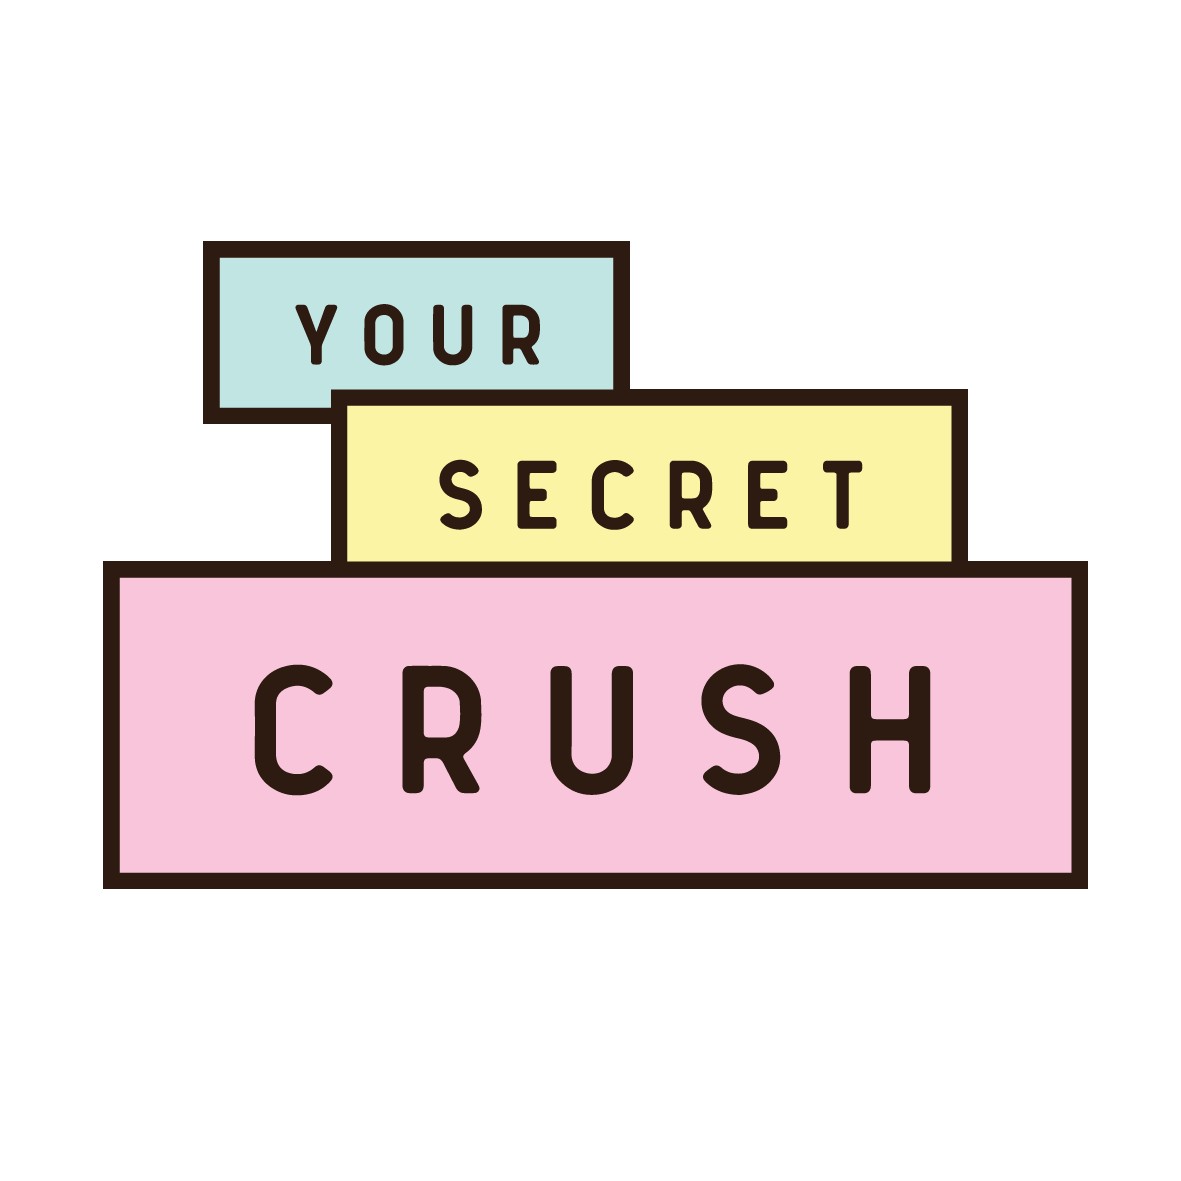 YOUR SECRET CRUSH